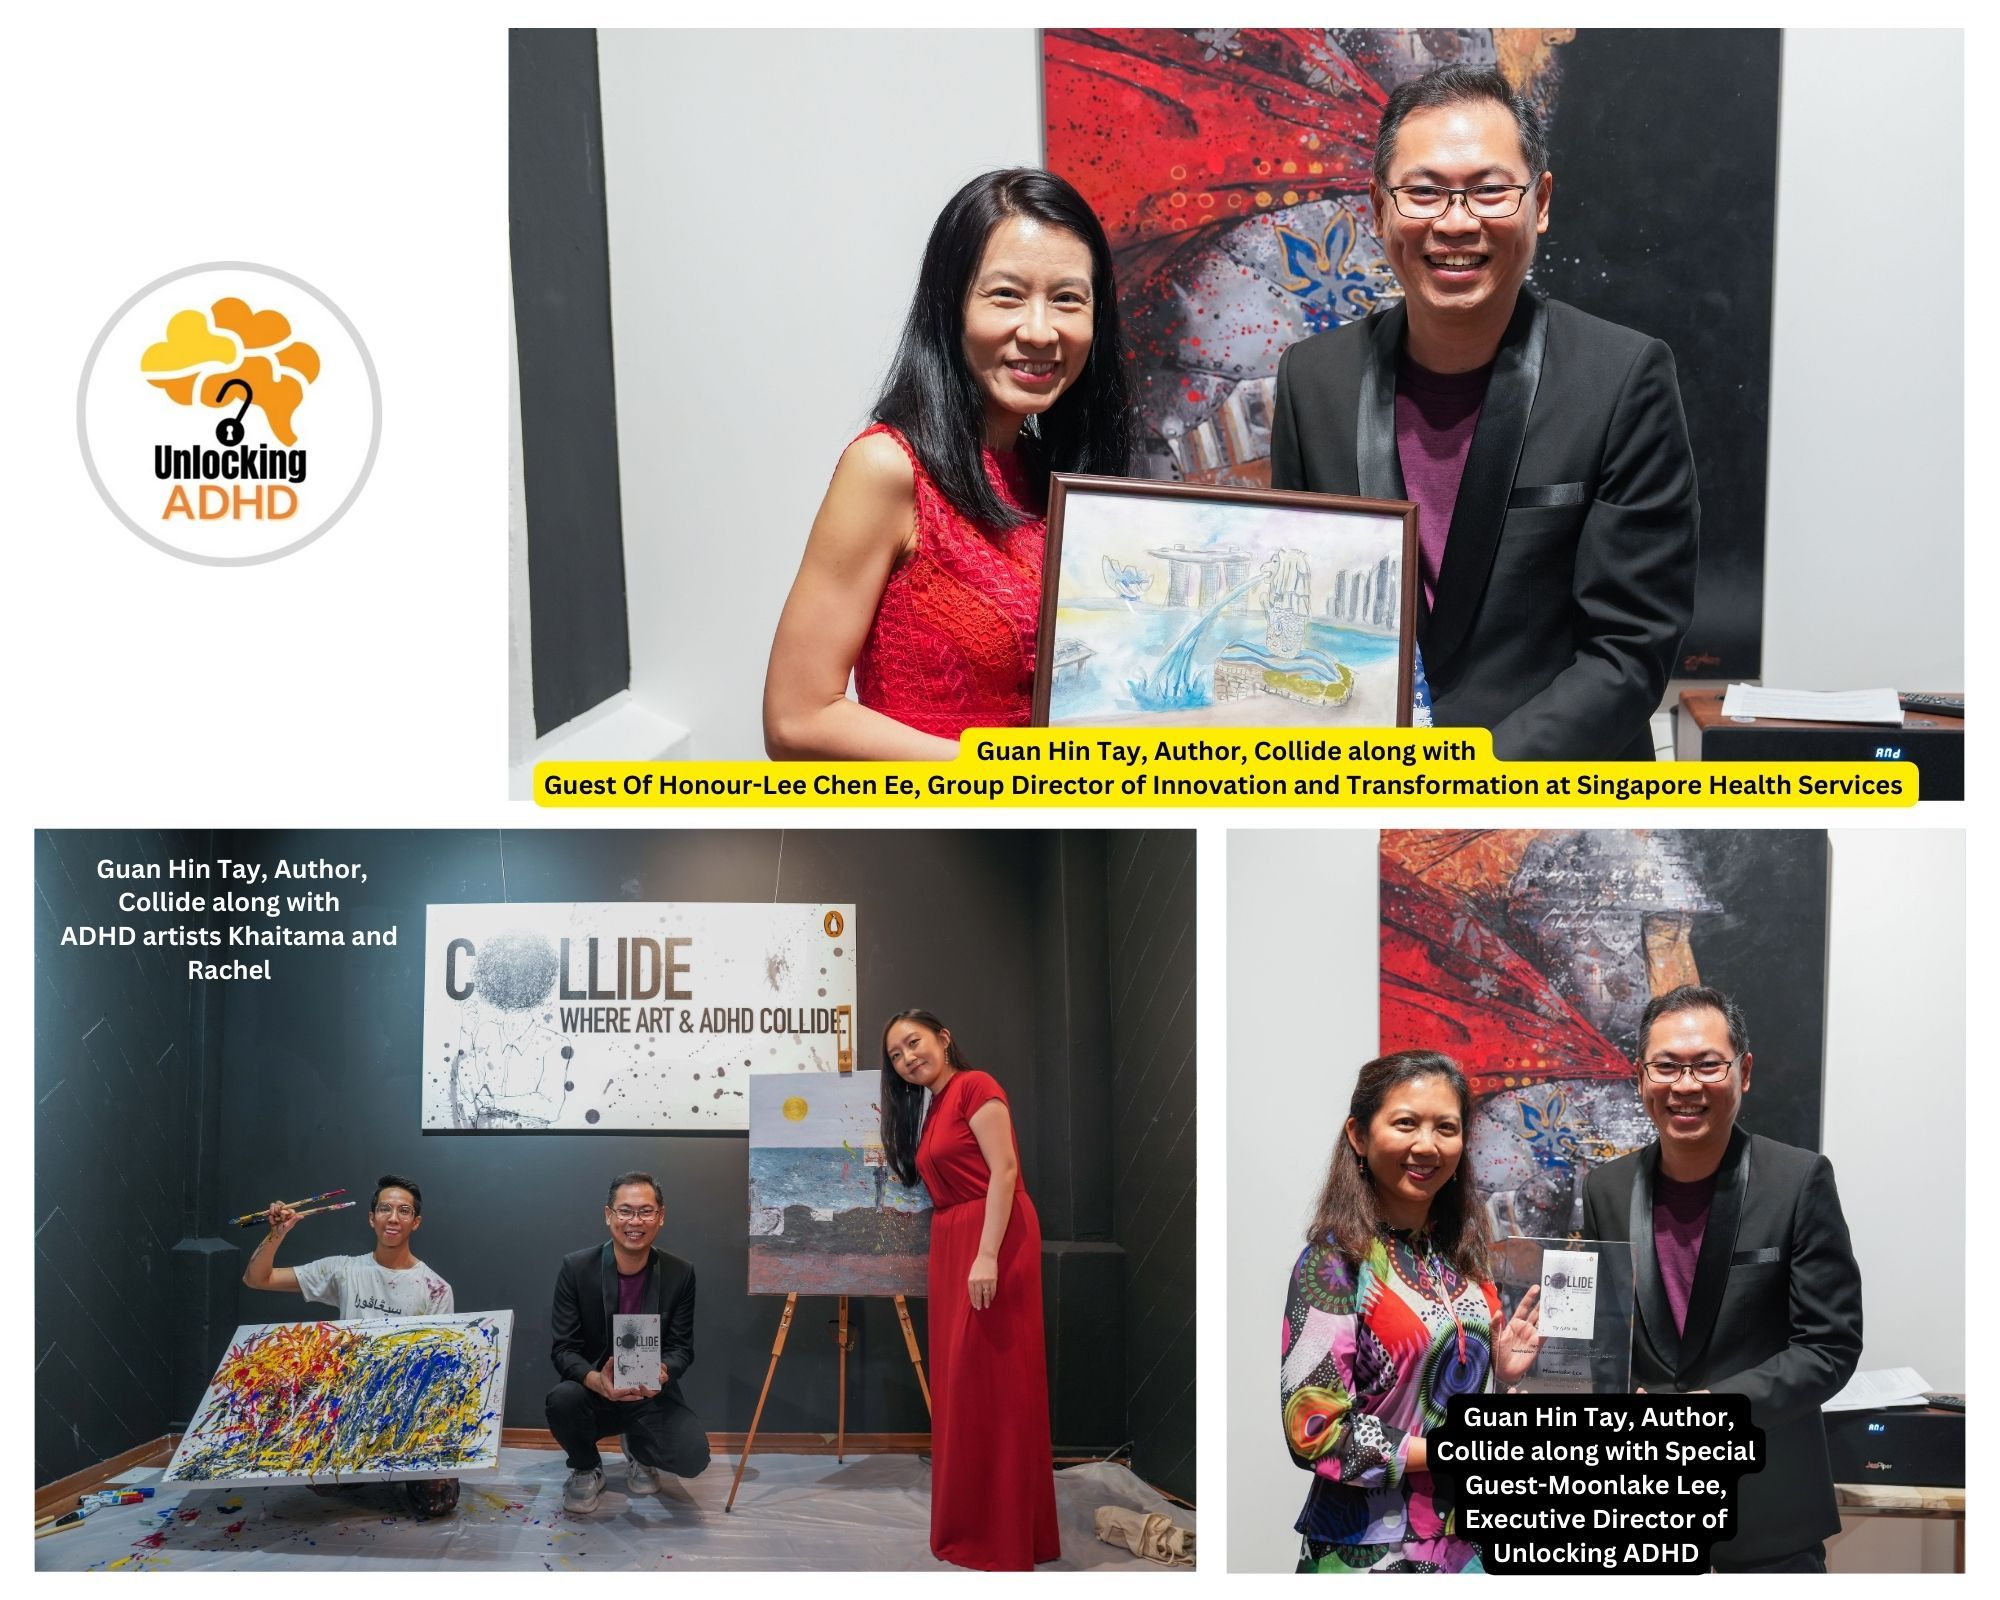 Singapur presenta su primer evento de pintura en vivo con artistas con TDAH, inspirados en 'Collide' de Tay Guan Hin"